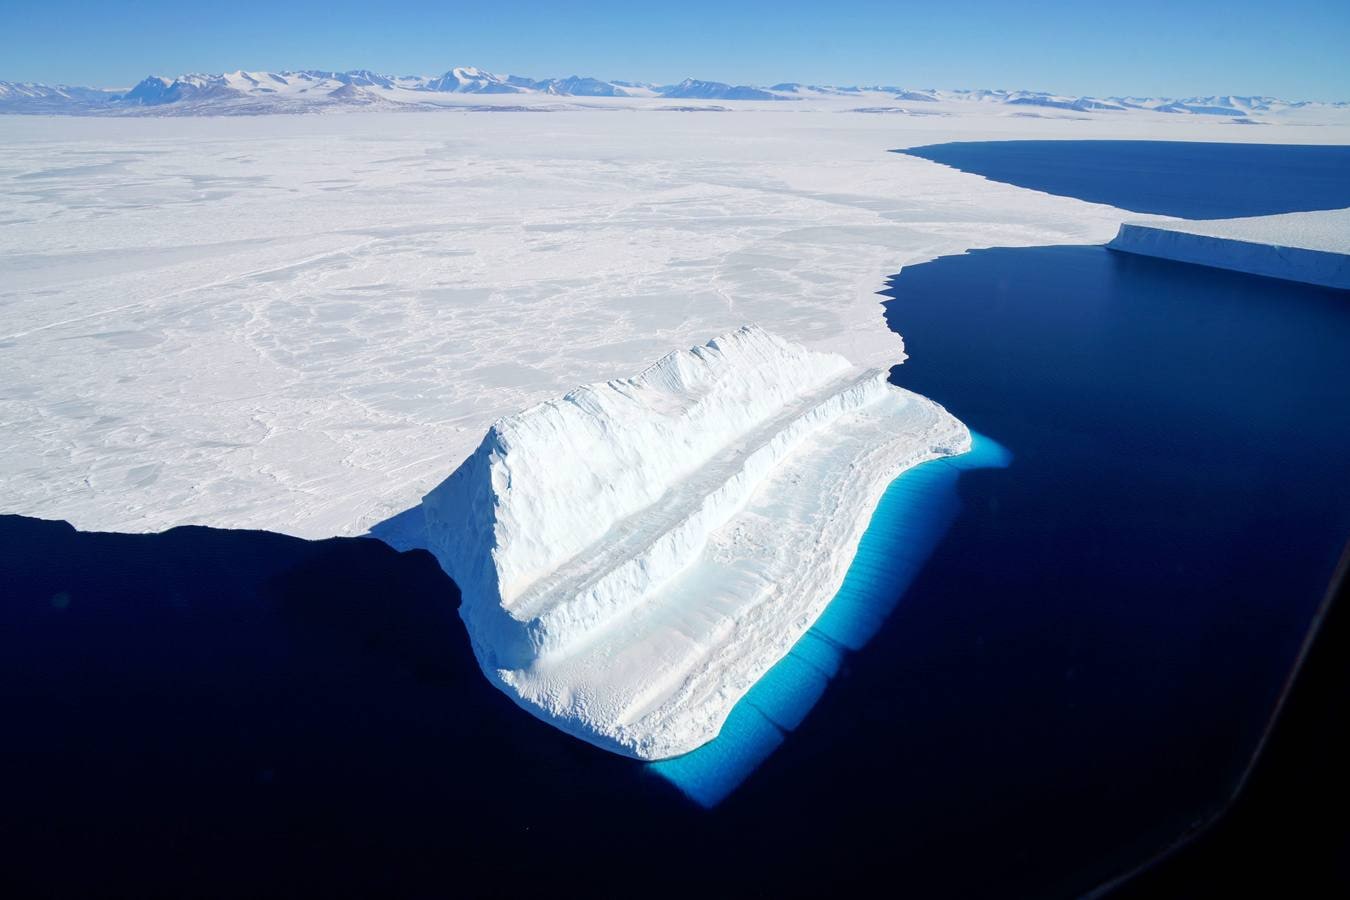 Imagen de la NASA publicada el 20 de diciembre de 2017 y tomada el 29 de noviembre de 2017 por la Operación IceBridge durante un vuelo a Victoria Land. La imagen muestra un iceberg flotando en el estrecho McMurdo de la Antártida. La parte del iceberg sumergida aparece más azul debido principalmente a la luz del agua. La parte inferior de algunos icebergs puede erosionarse y exponer hielo más viejo, más denso e increíblemente azul. La erosión puede cambiar la forma de un iceberg y hacer que se voltee, trayendo el hielo azul esculpido sobre la superficie del agua. La forma única en forma de escalón de este berg -comparado con el témpano tabular y más estable en la parte superior derecha de la imagen- sugiere que probablemente giró en algún momento. 